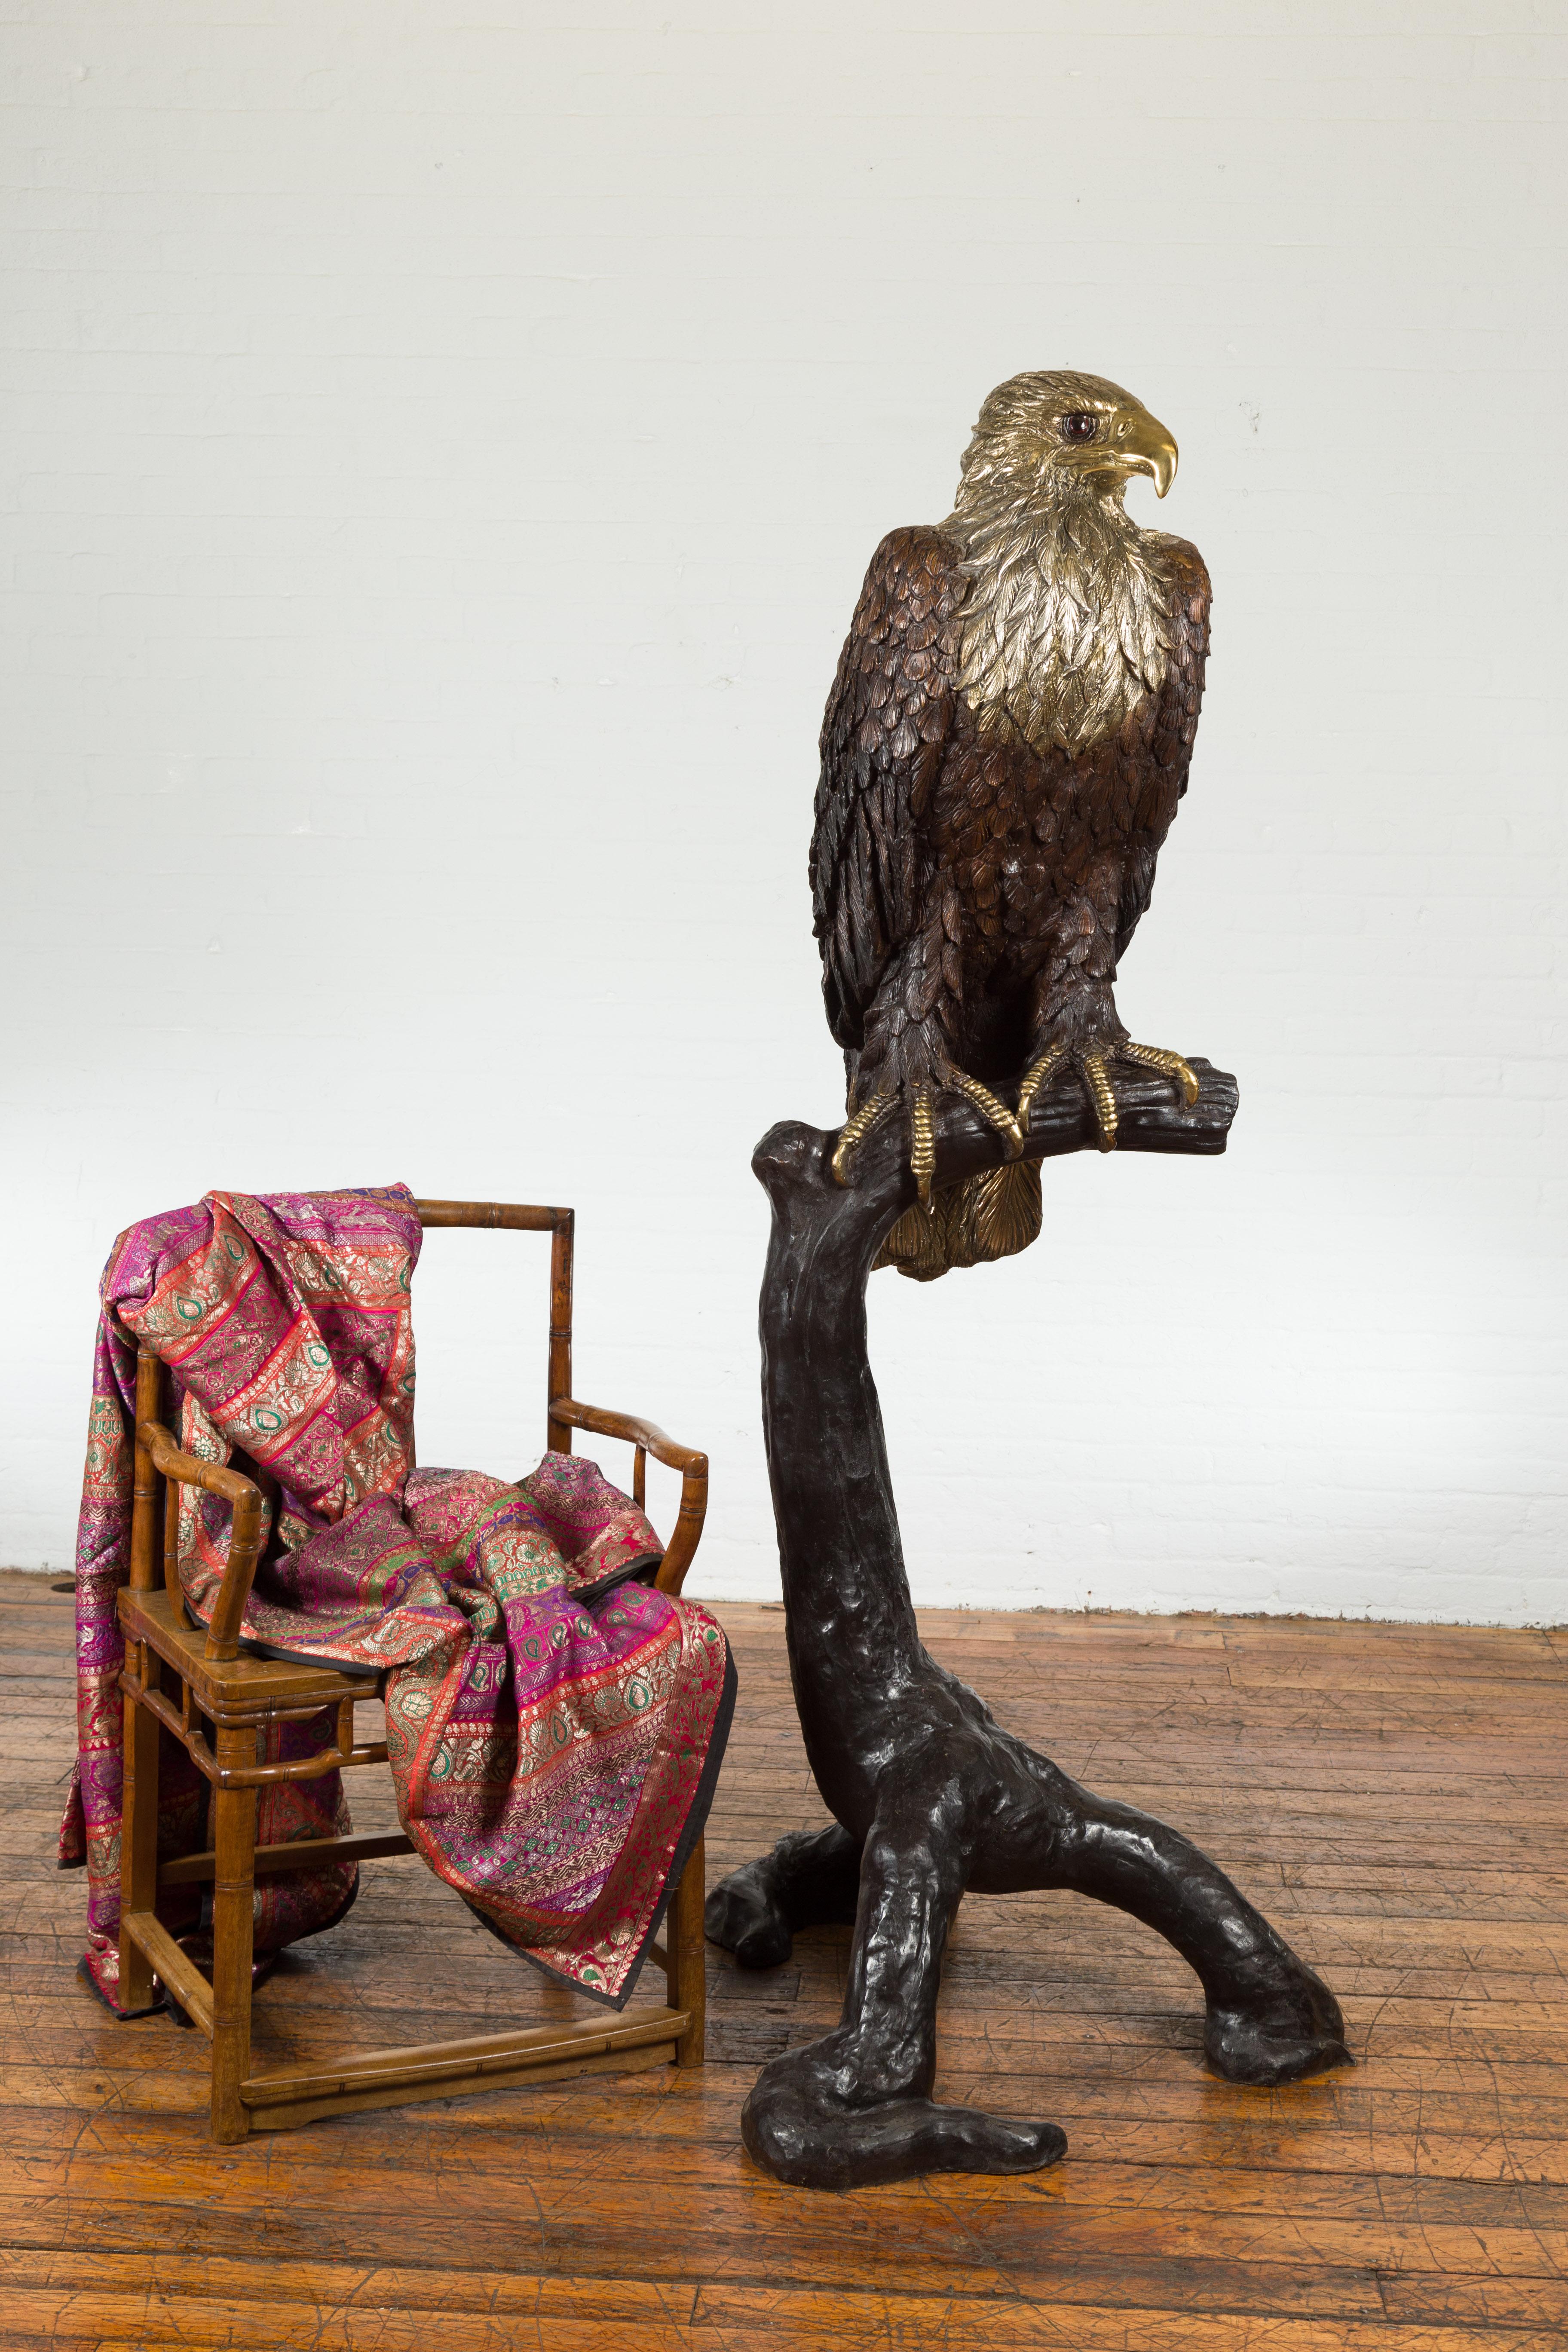 Ein verlorenes Wachs gegossen Bronze lebensgroße Statue eines Adlers auf einem Baum Zweig mit Gold und Silber Highlights und zwei getönten Augen. Es handelt sich um eine aktuelle Produktion, die jetzt verfügbar ist. Diese lebensgroße Adlerstatue aus